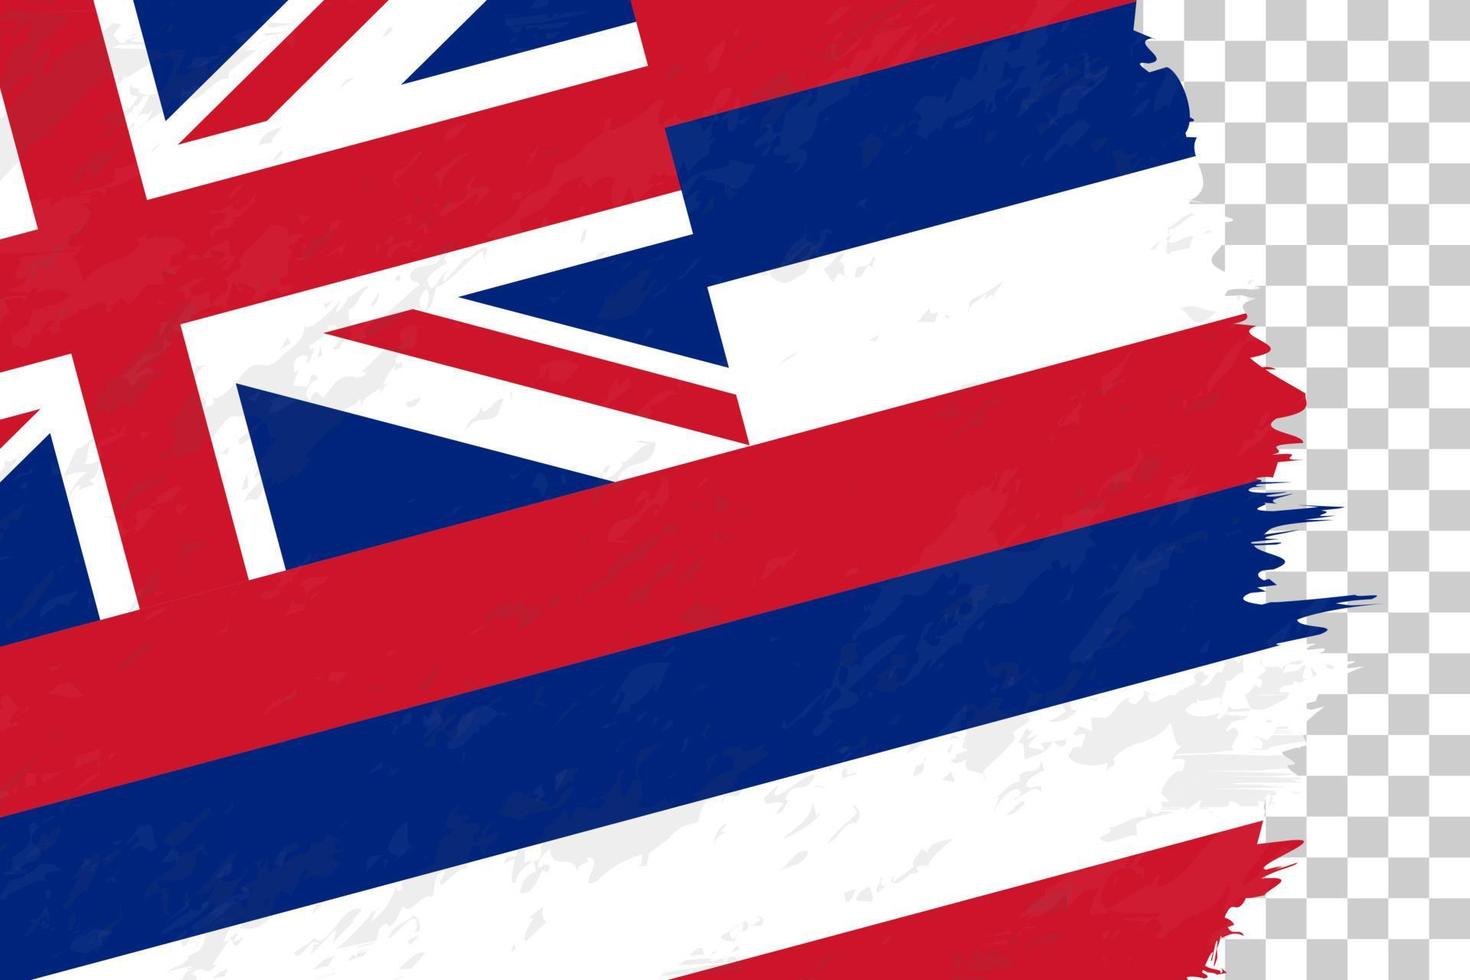 orizzontale astratto grunge spazzolato bandiera delle hawaii sulla griglia trasparente. vettore